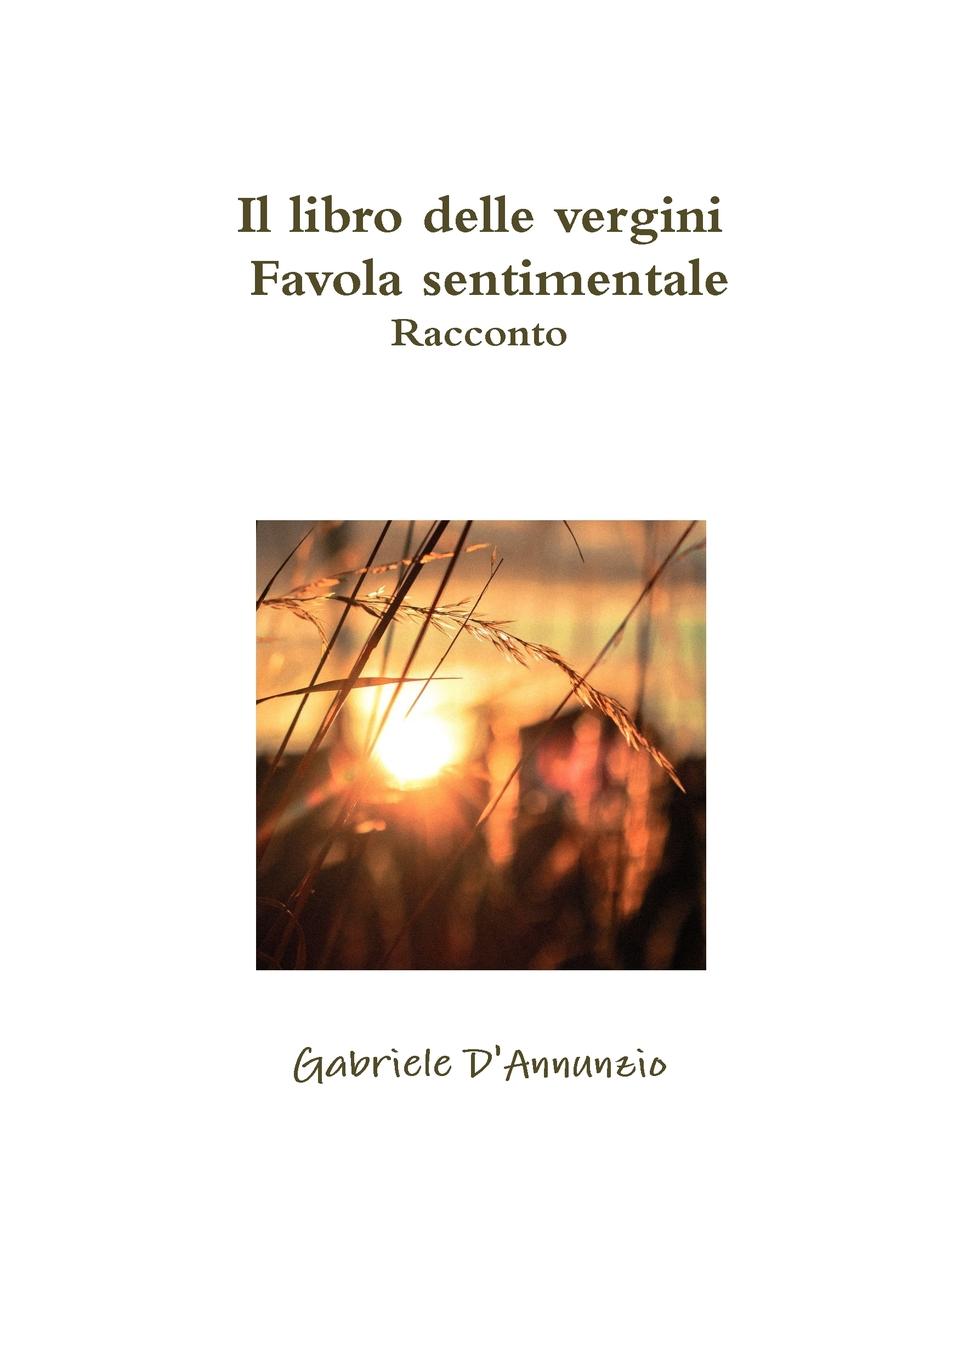 Gabriele D'Annunzio Il libro delle vergini - Favola sentimentale - Racconto